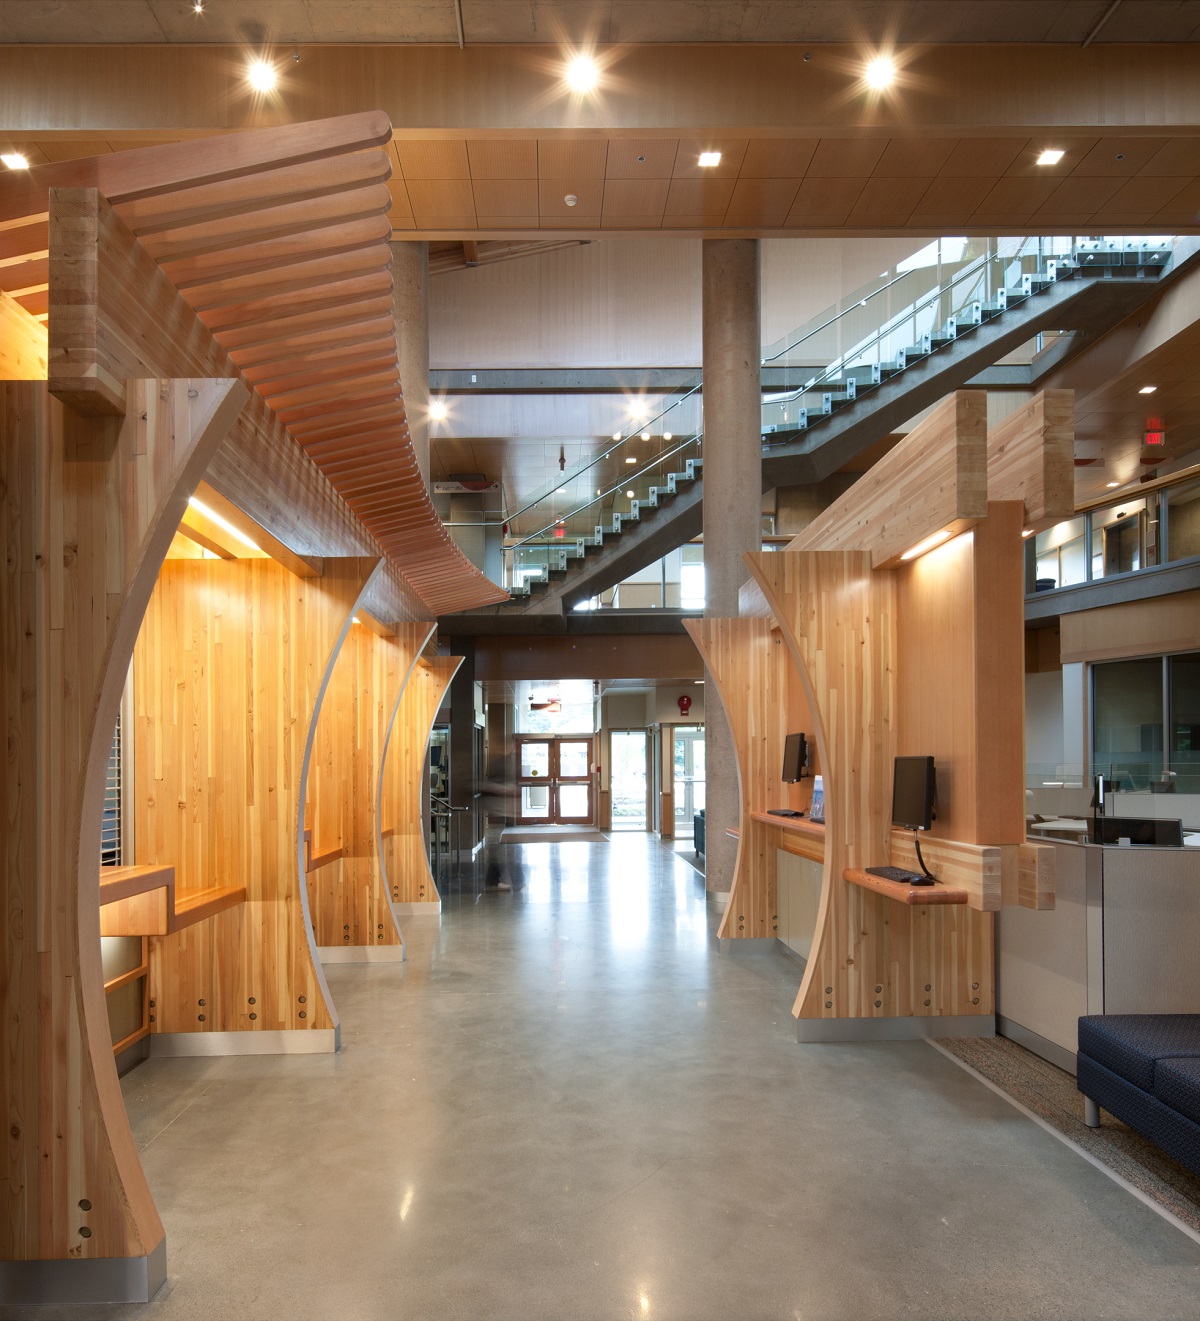 胶合木(胶合木)梁和装饰工作台隔板、木材装饰和装饰木材元素都展示在温哥华岛大学考伊坎校区的多层主入口和中庭的白天室内图像中